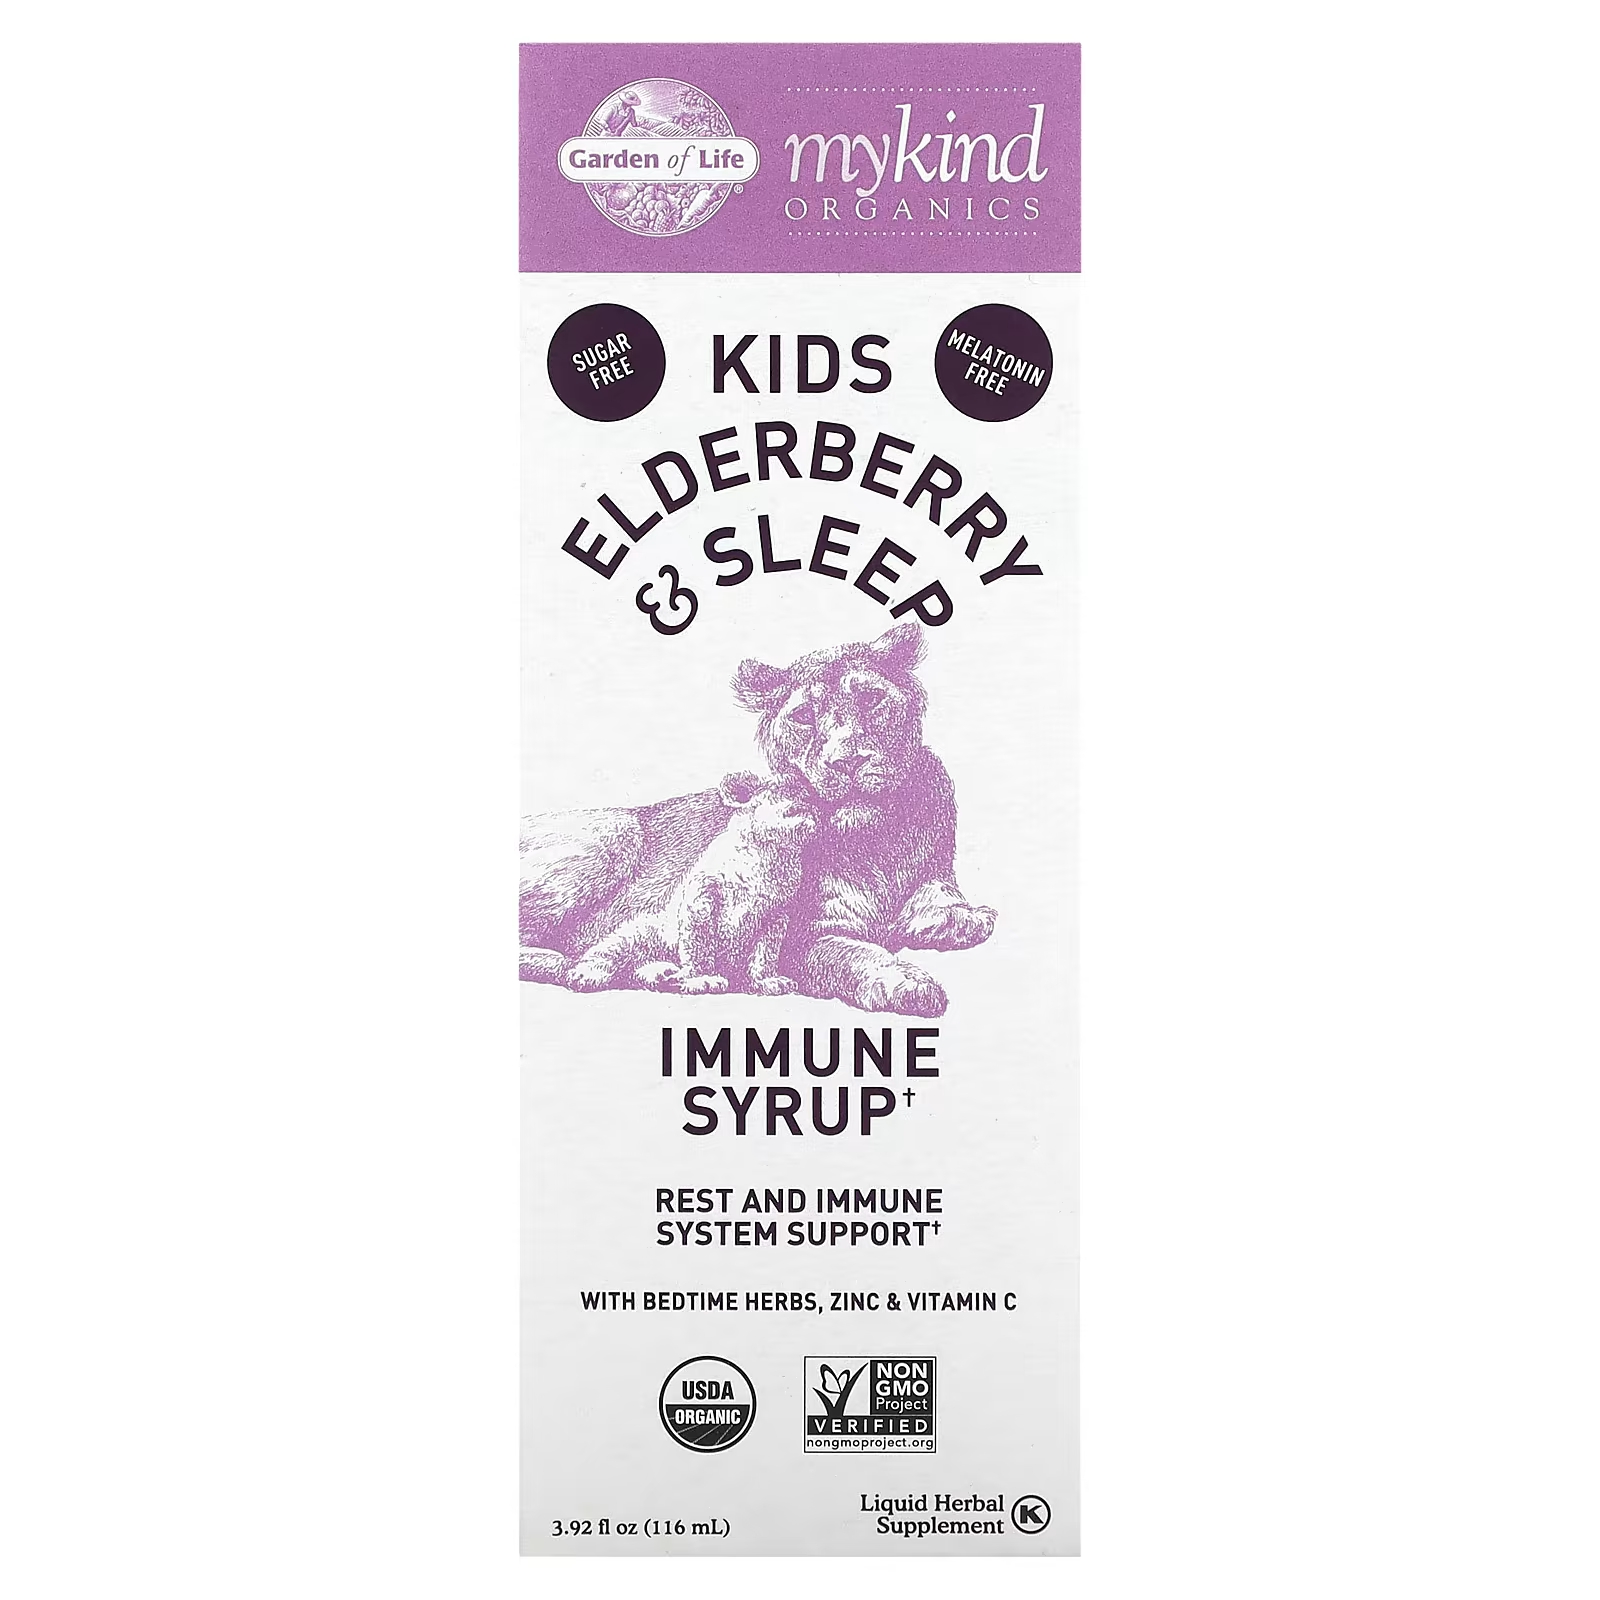 Garden of Life Mykind Organics Kids Elderberry & Sleep подобными успокаивающими действиями для повышения иммунитета с цинком и витамином C 116 мл (3,92 жидк. унции) детский сироп для иммунитета с витамином c 116 мл garden of life